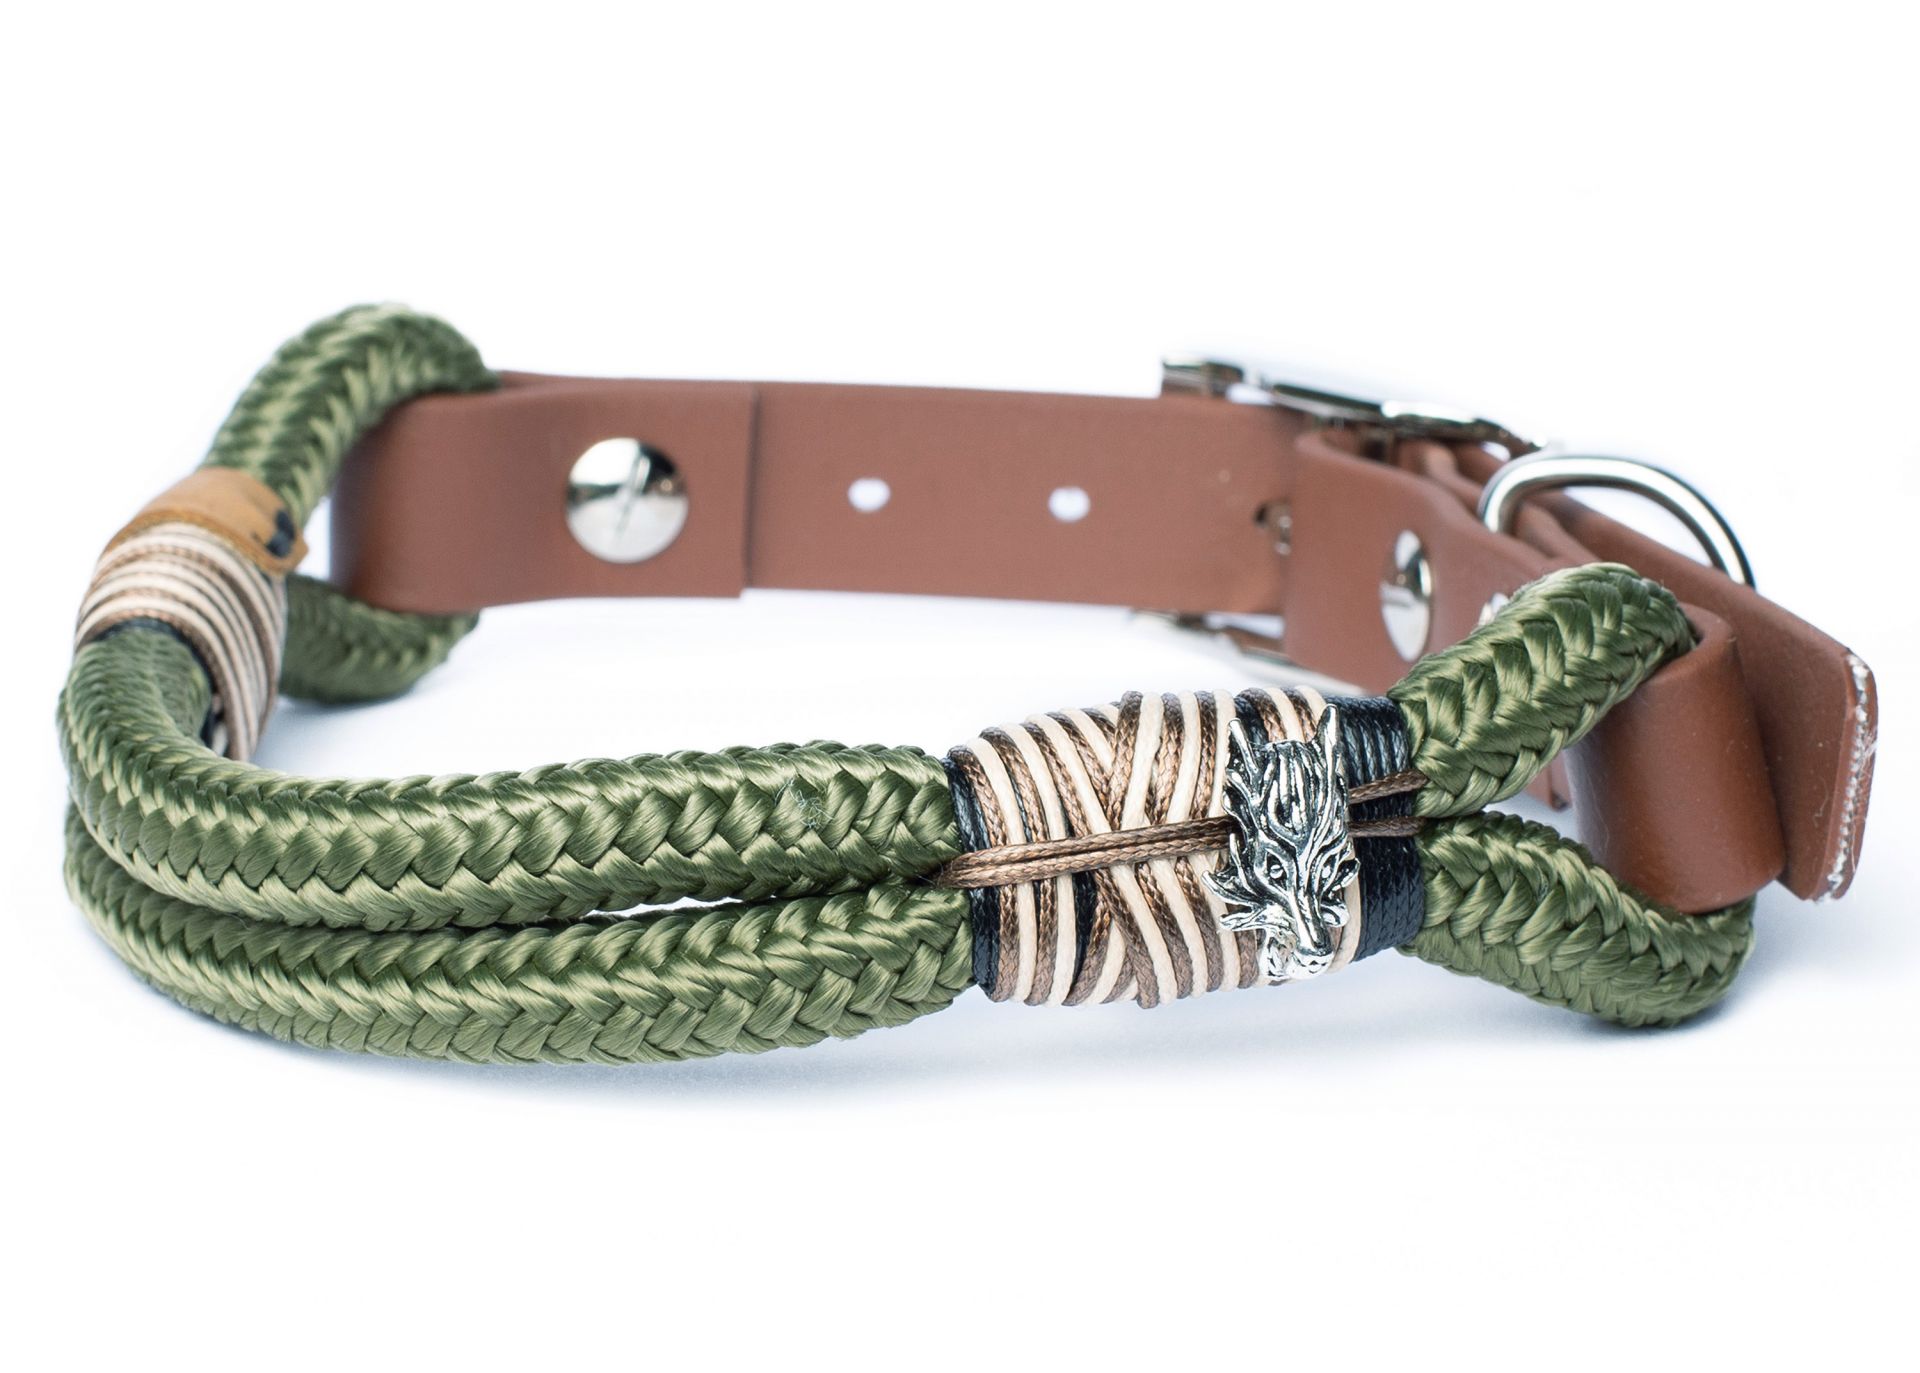 Halsband Hundehalsband Tauhalsband ohne Perlen Vegan Handarbeit abwaschbar verstellbar wasserabweisend robust Gassi gehen braun silber olivgrün